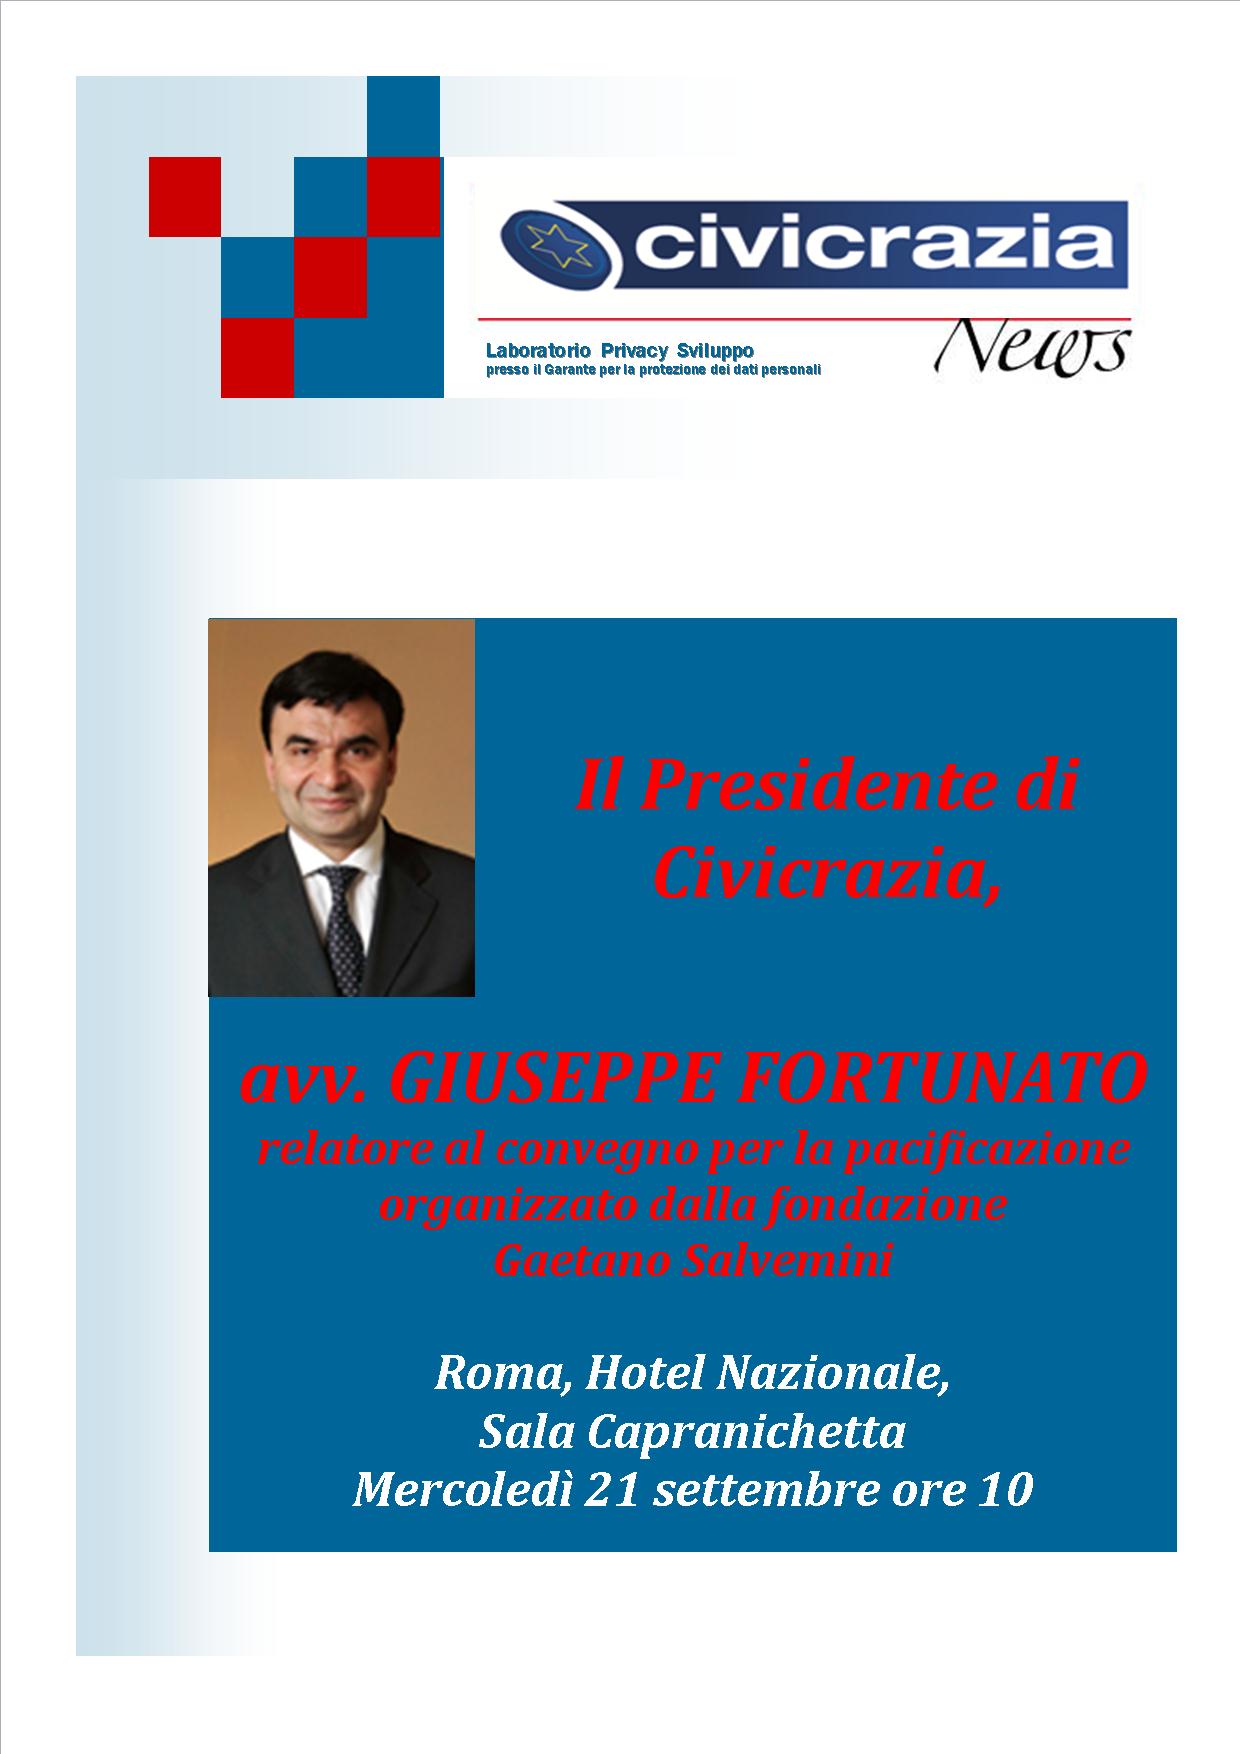 Civicrazia_News_speciale_Fondazione_Salvemini_1